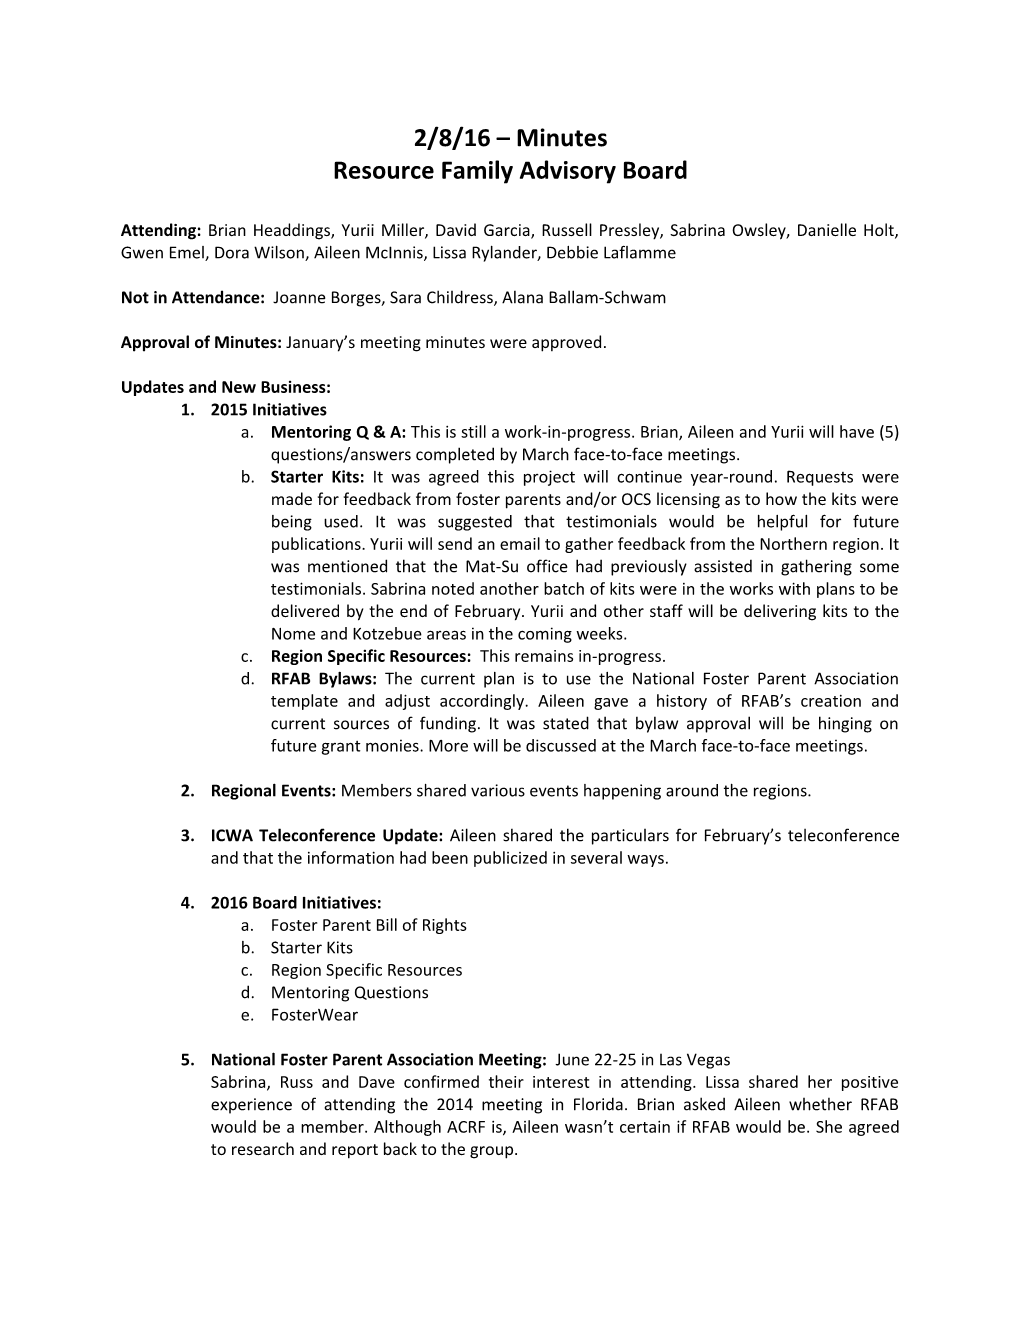 Resource Family Advisory Board